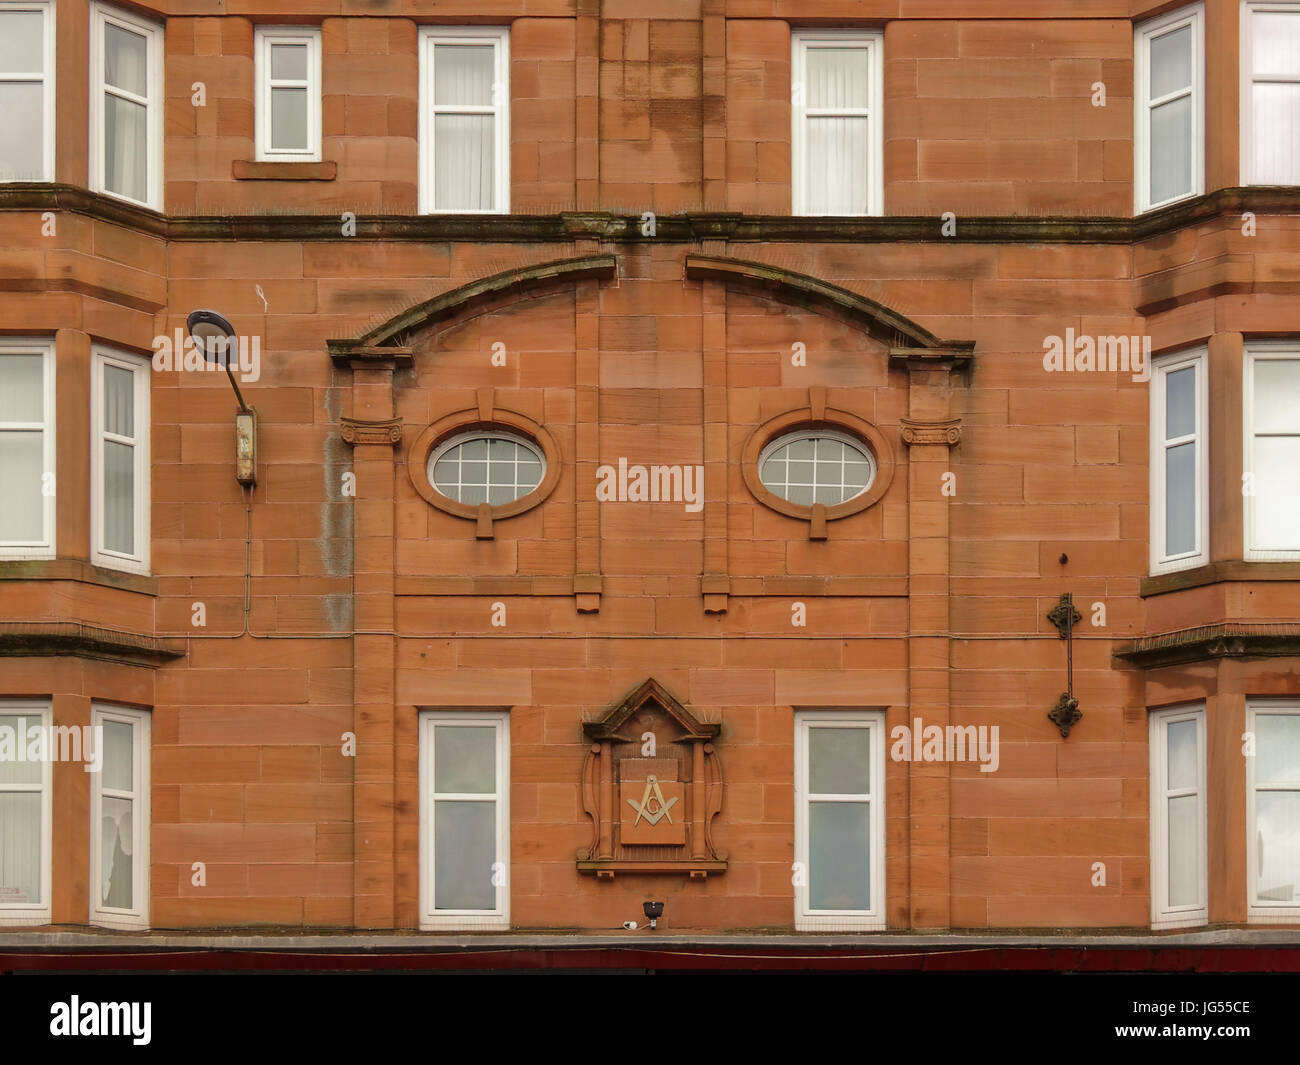 Sala massonico dumbarton road in partick, glasgow Scozia pietra arenaria rossa edificio che è simbolo di Mason e assomiglia a una faccia Foto Stock